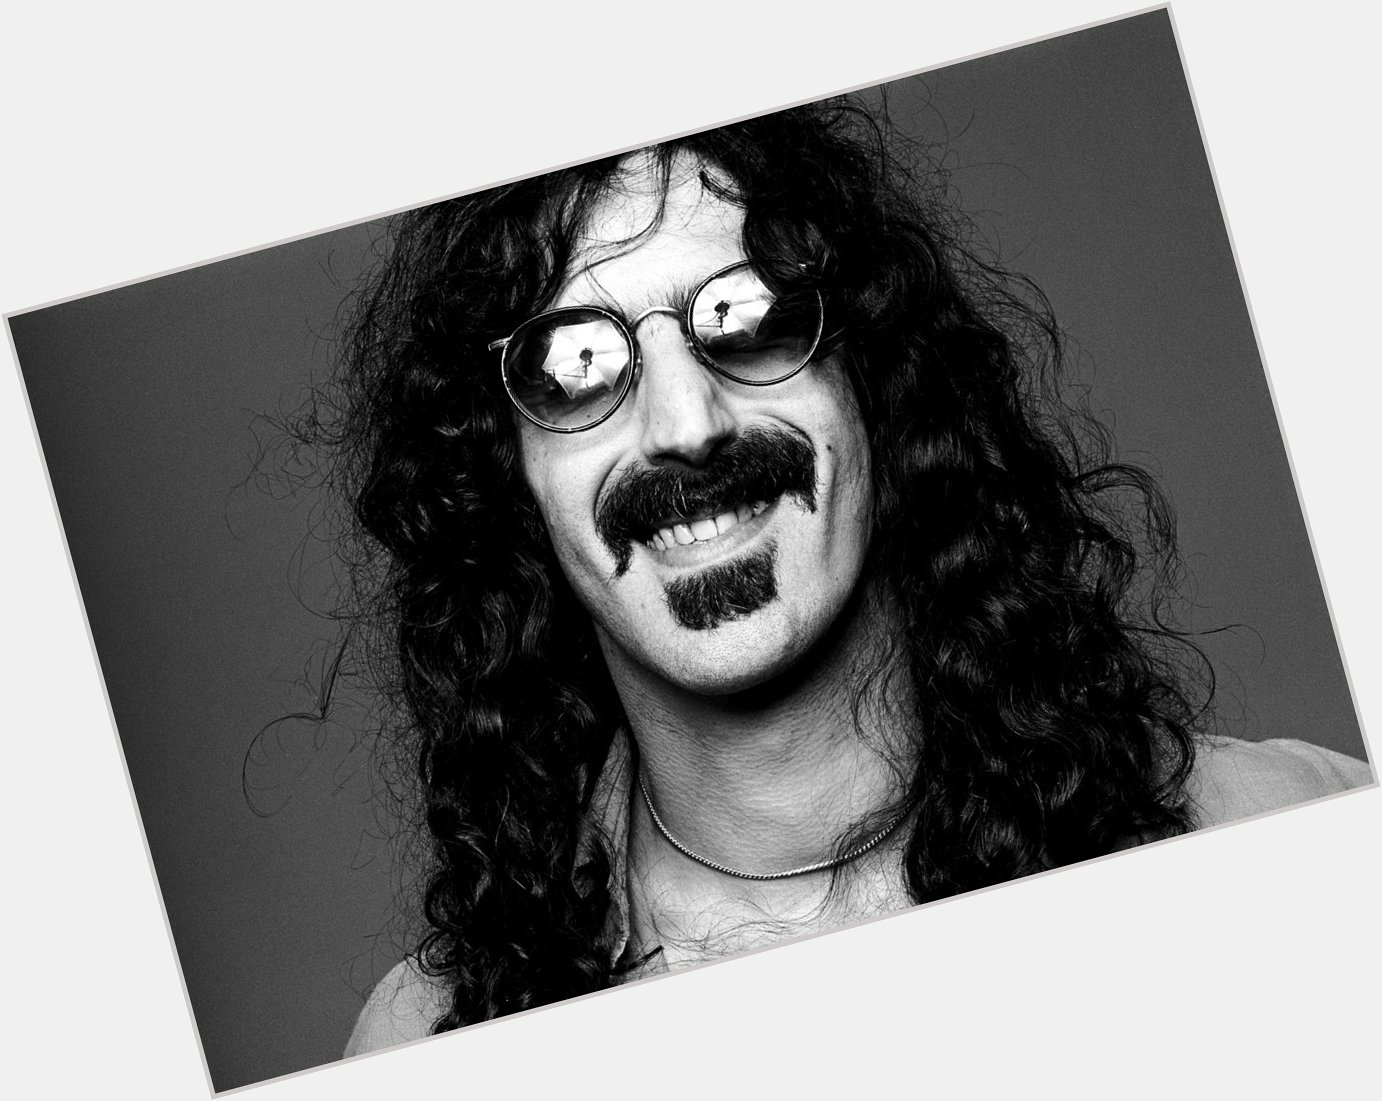 Happy birthday to Frank Zappa, who would have turned do do do do do dooooo today. 